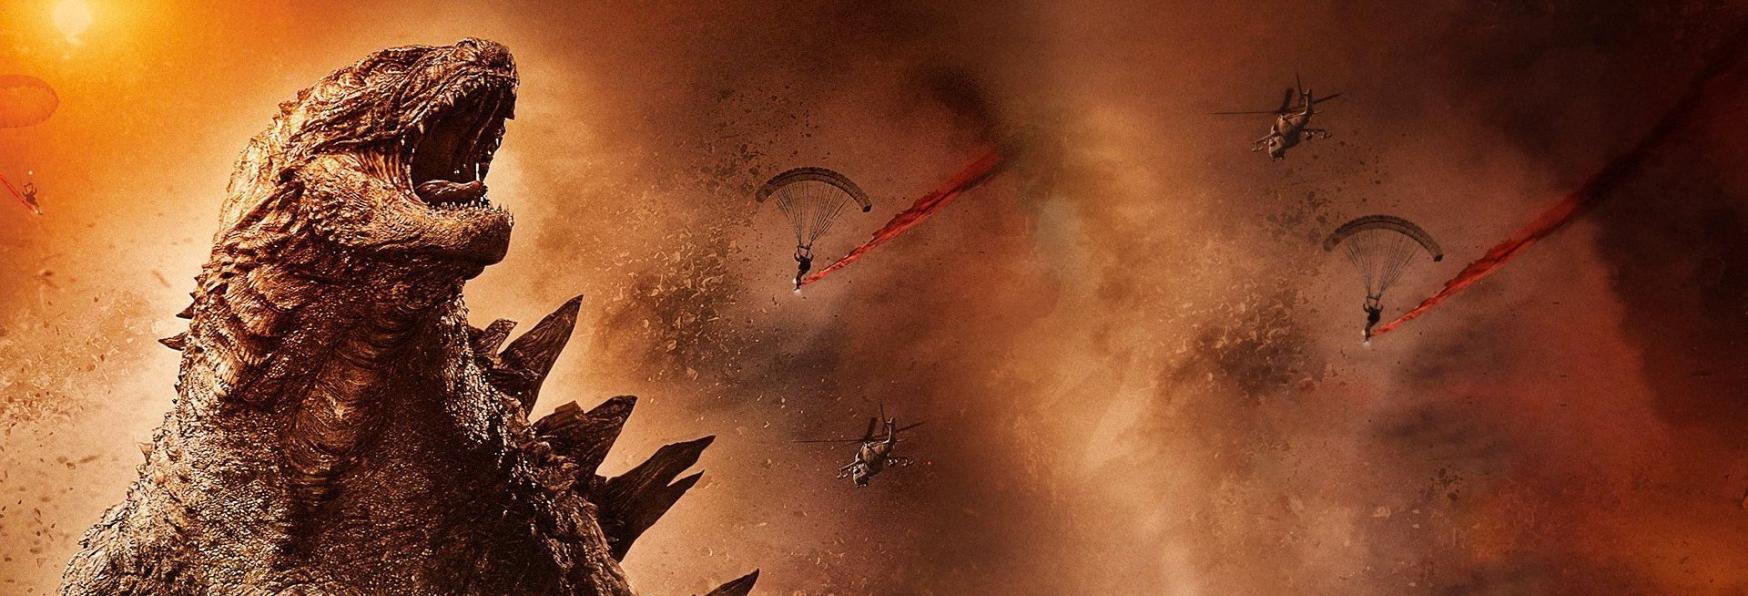 Godzilla: in arrivo una nuova Serie TV Prequel dei Toho Studios?